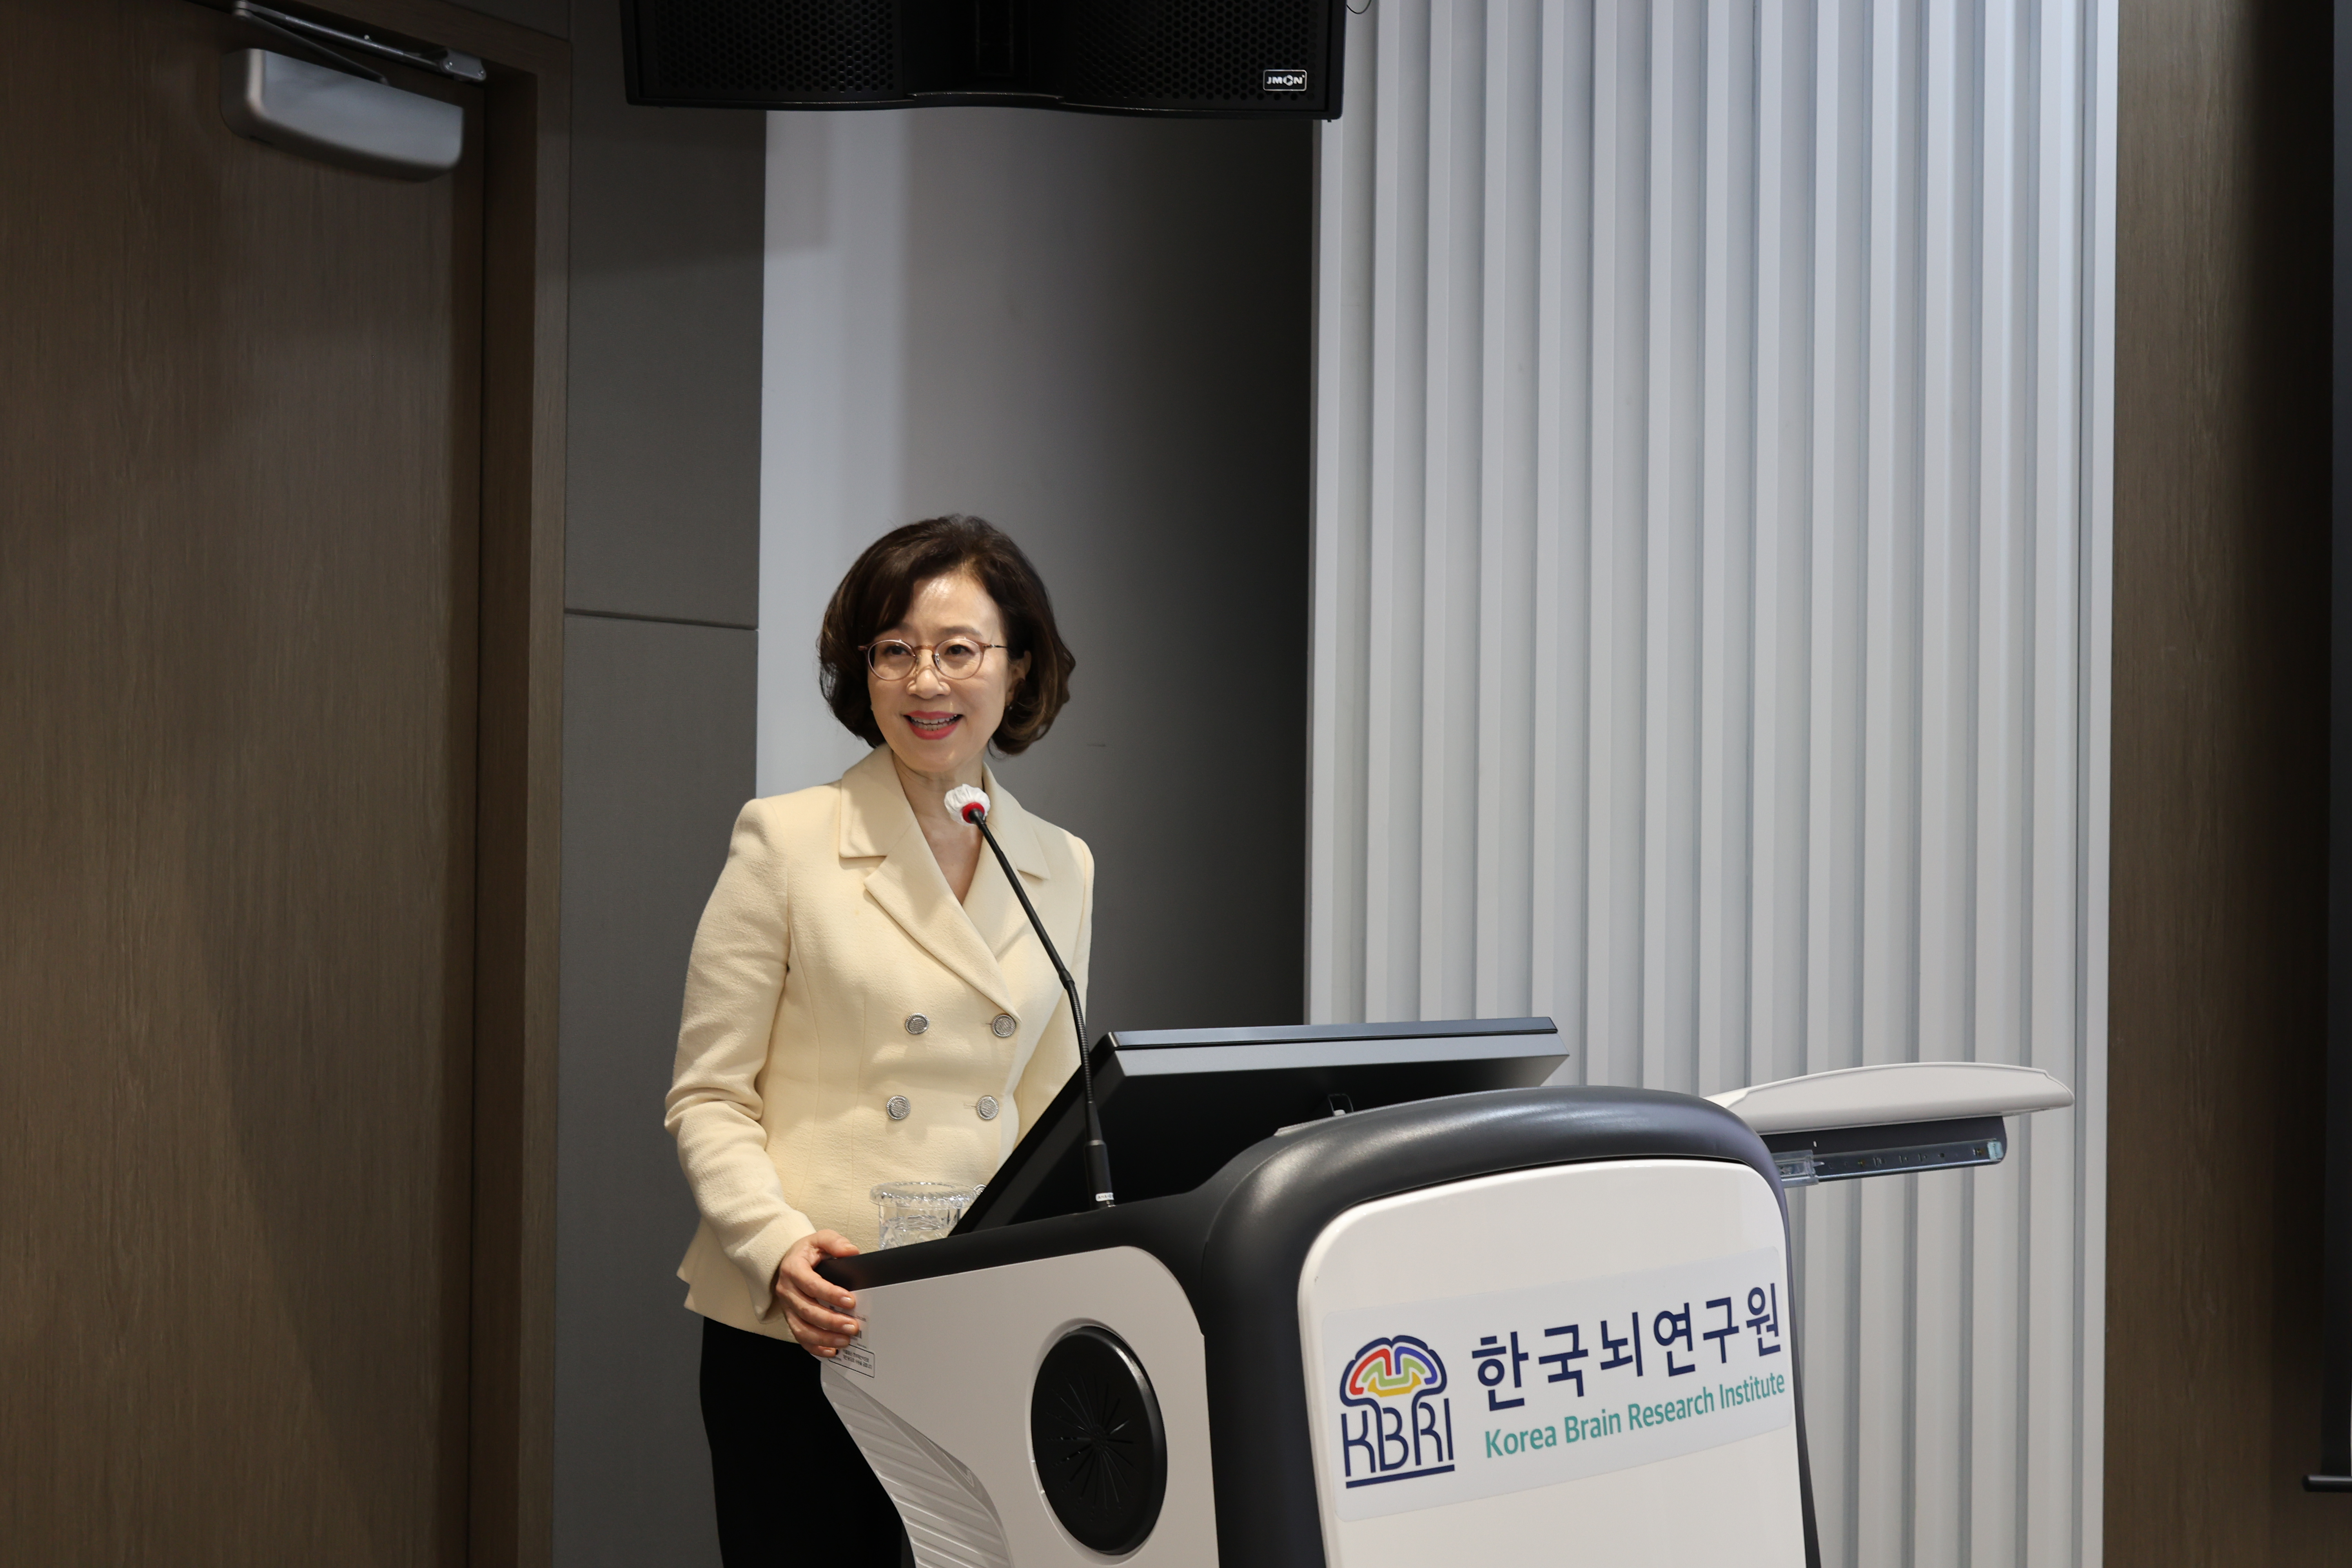 한국뇌연구원 설립 12주년 기념 WISET 문애리 이사장 특별 강연